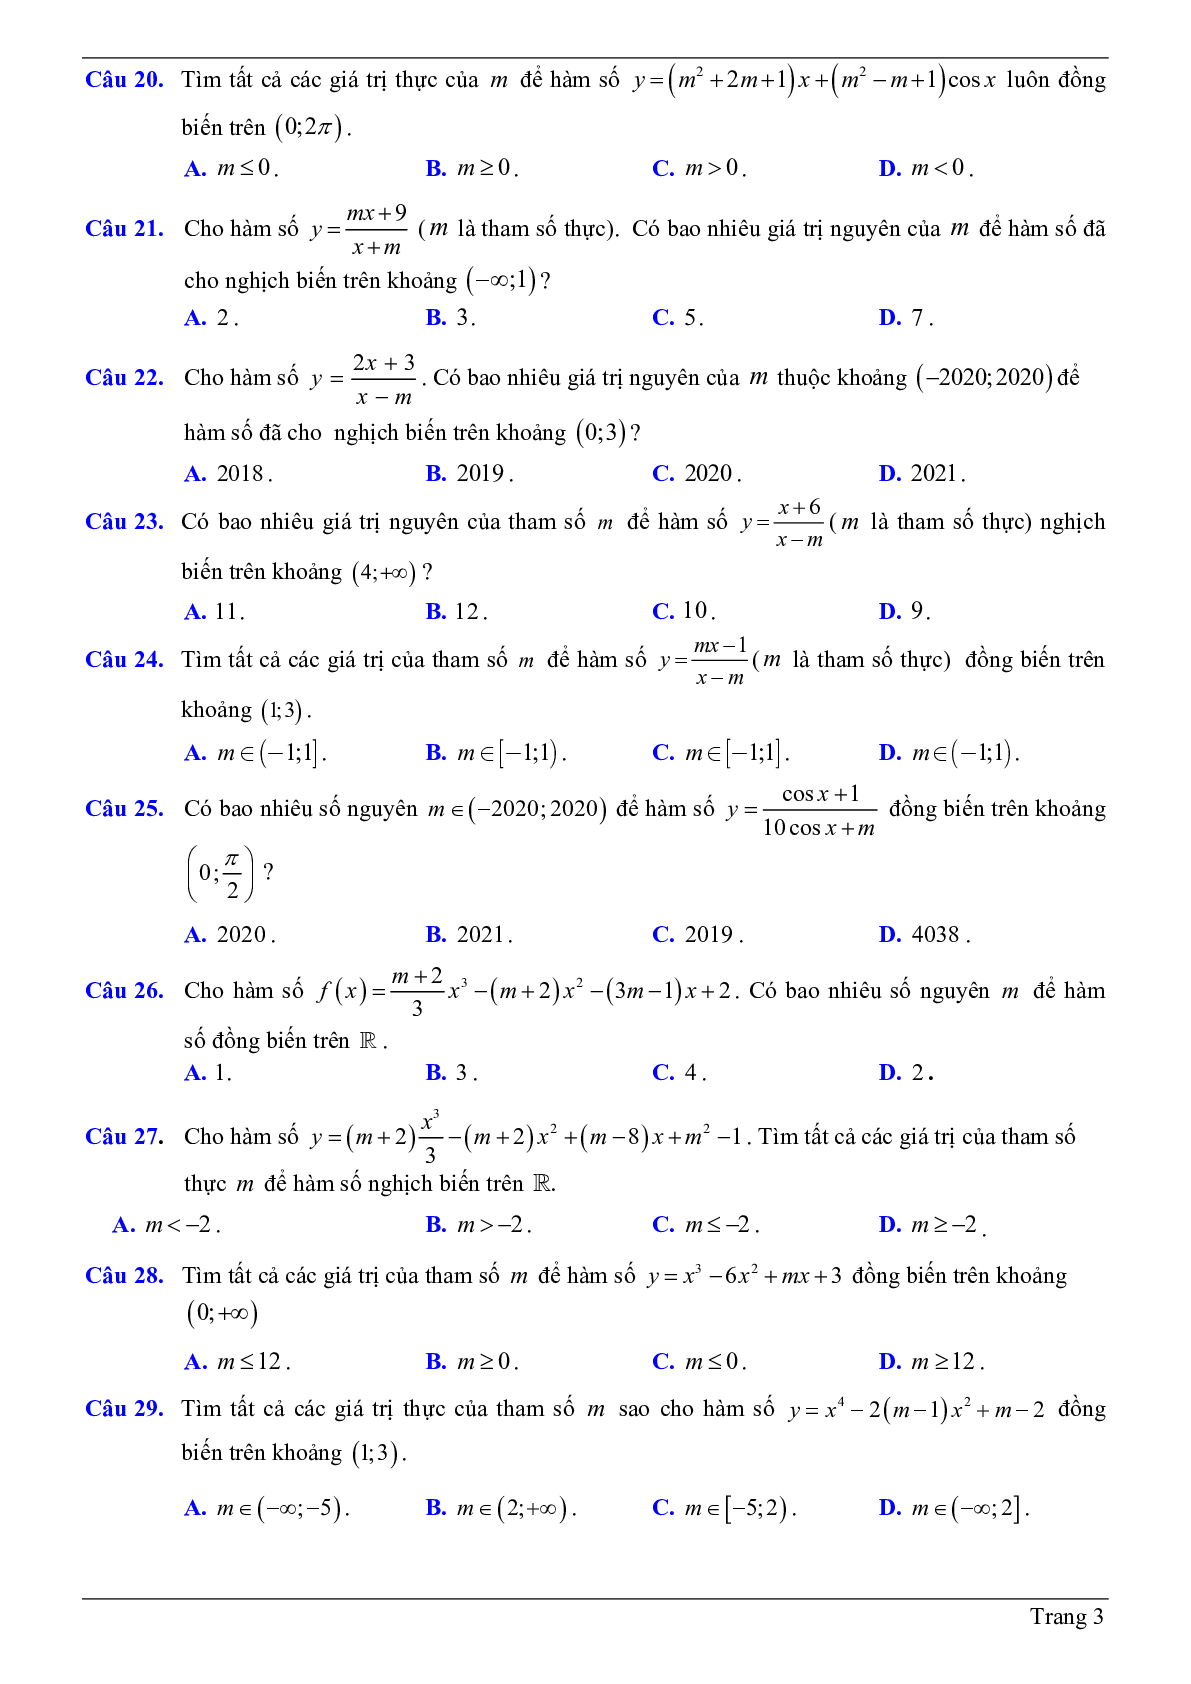 50 Bài tập trắc nghiệm về tính đơn điệu của hàm số chứa tham số m có đáp án 2023 (trang 3)